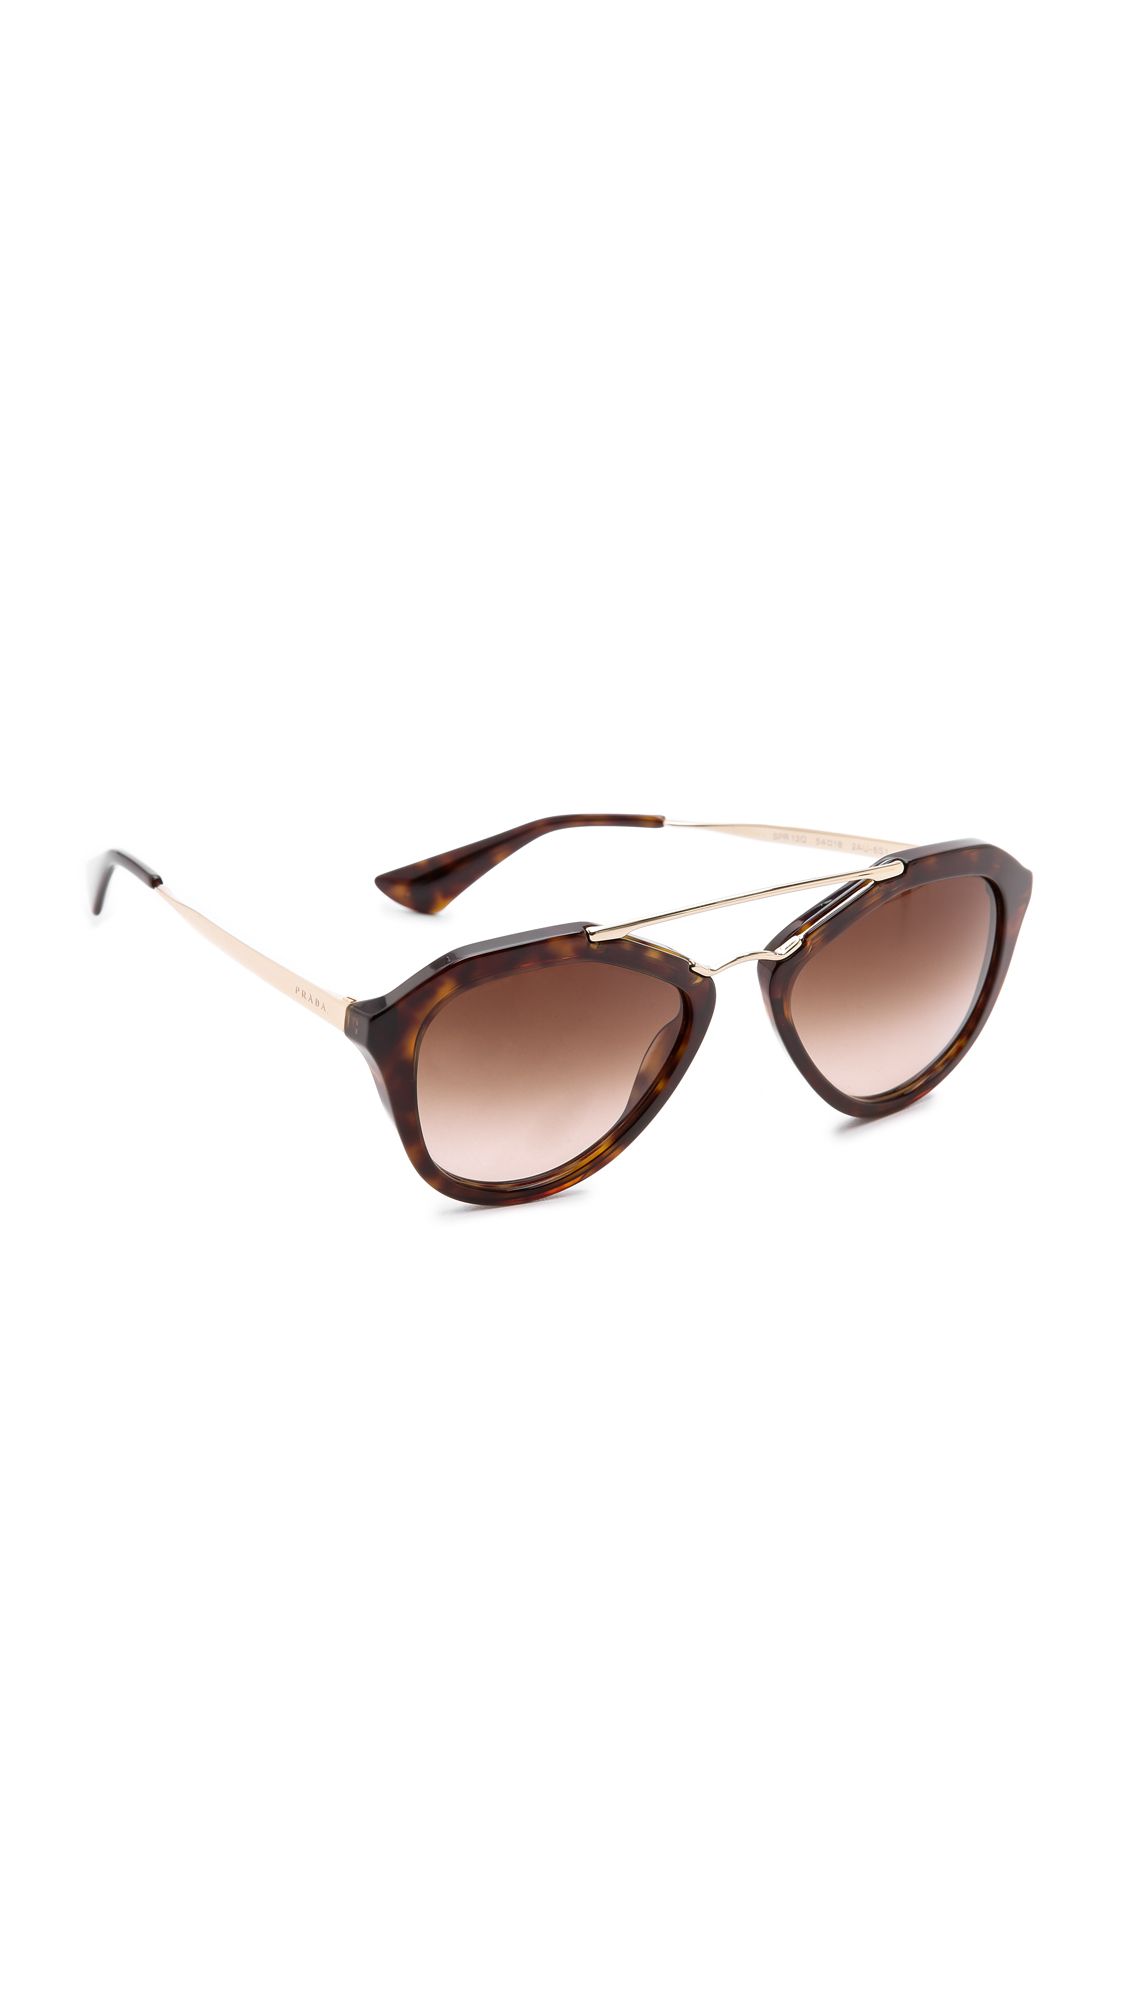 Prada Aviator Sunglasses - Brown/Brown | Shopbop